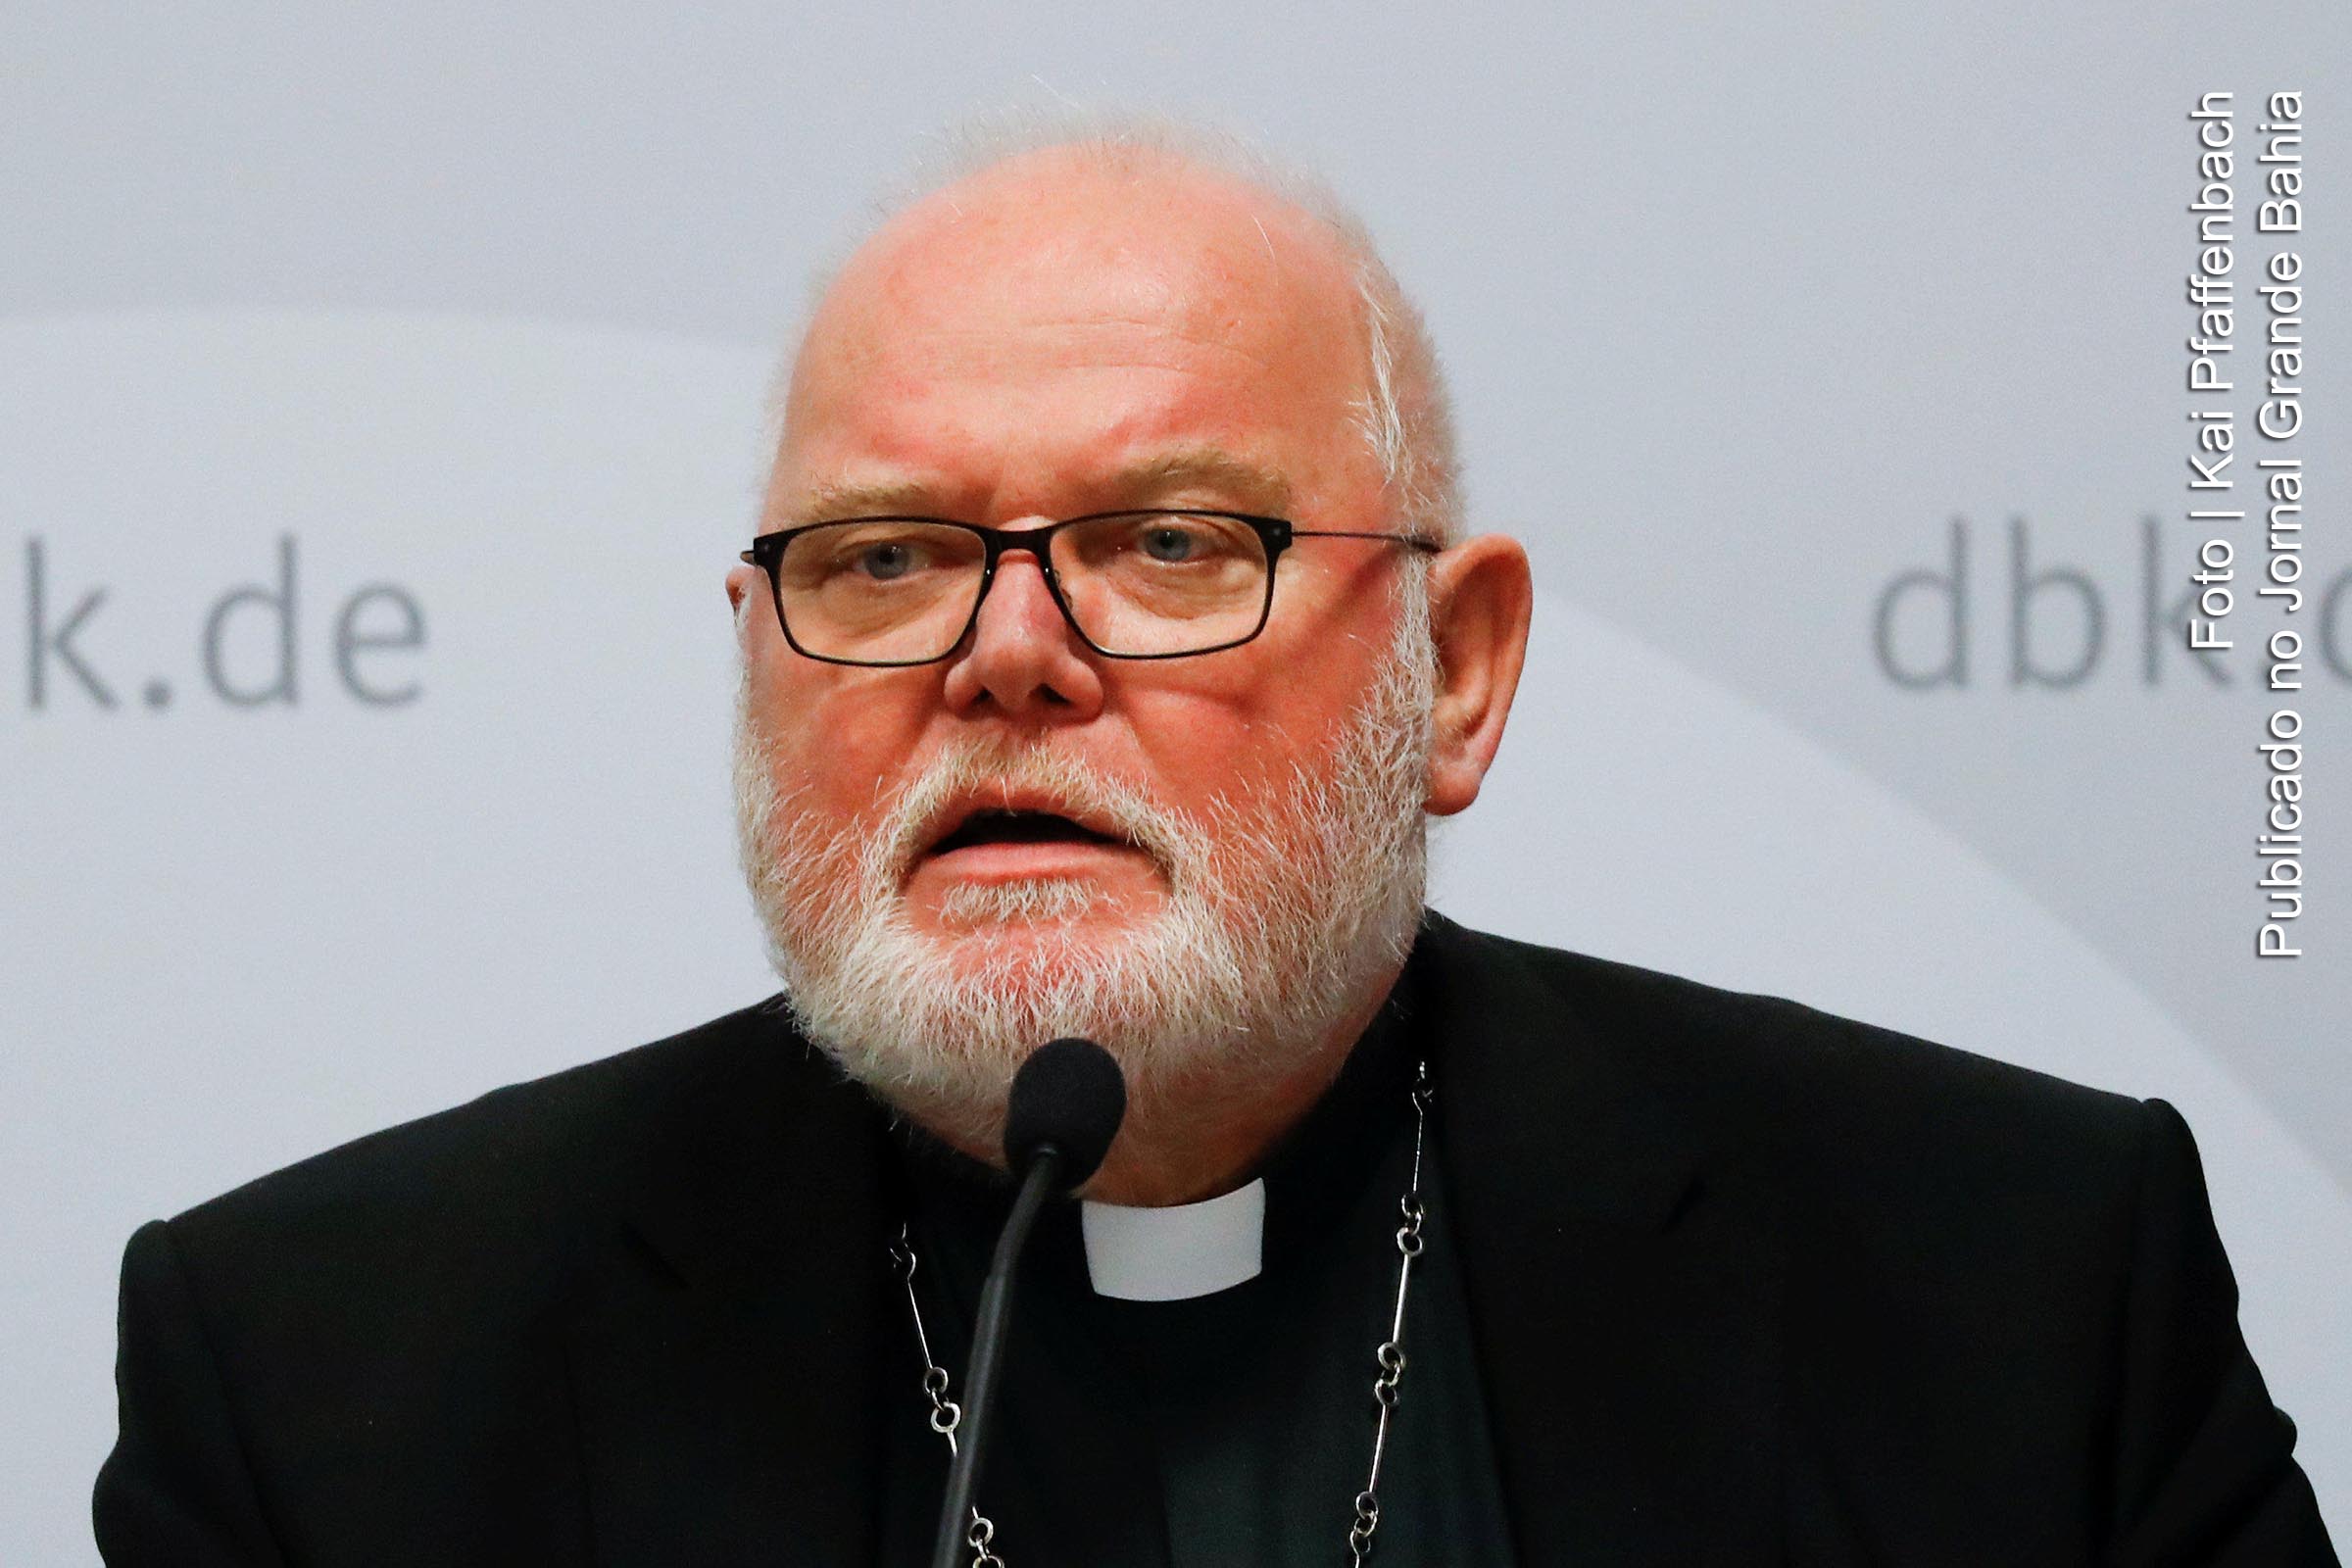 Reinhard Marx é um cardeal alemão, atual arcebispo da Arquidiocese de Munique e Frisinga.